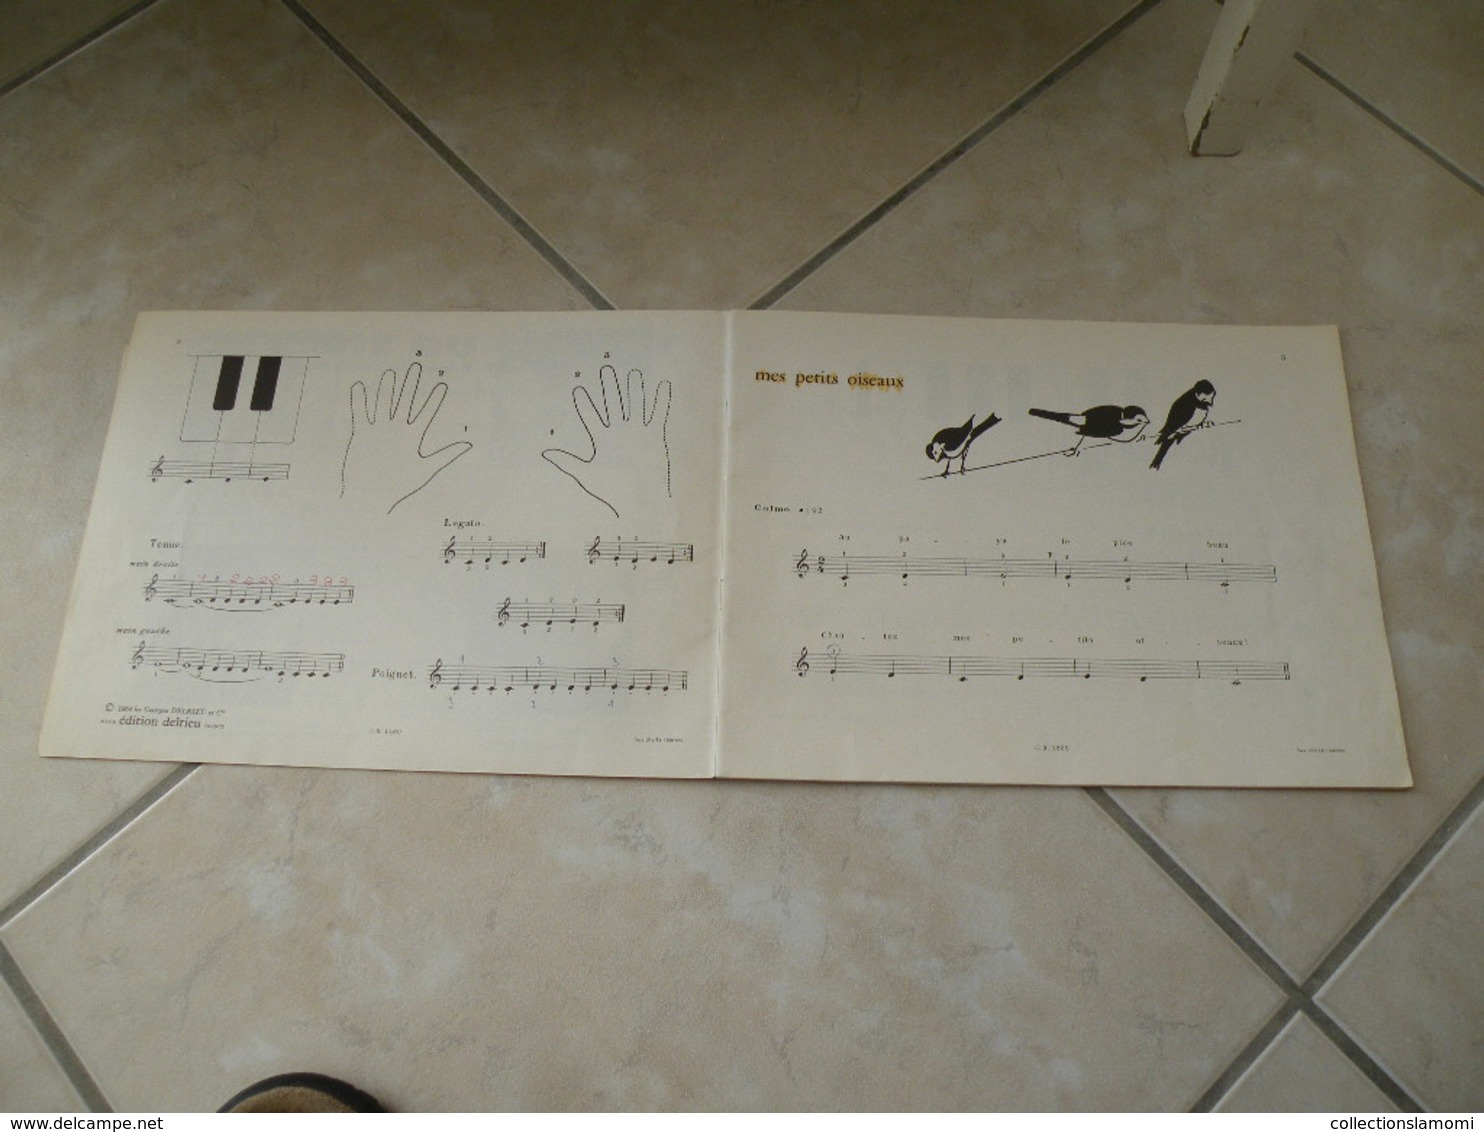 L'Enfant Au Clavier, Méthode De Piano Illustrée - Musique (1) - Aprendizaje